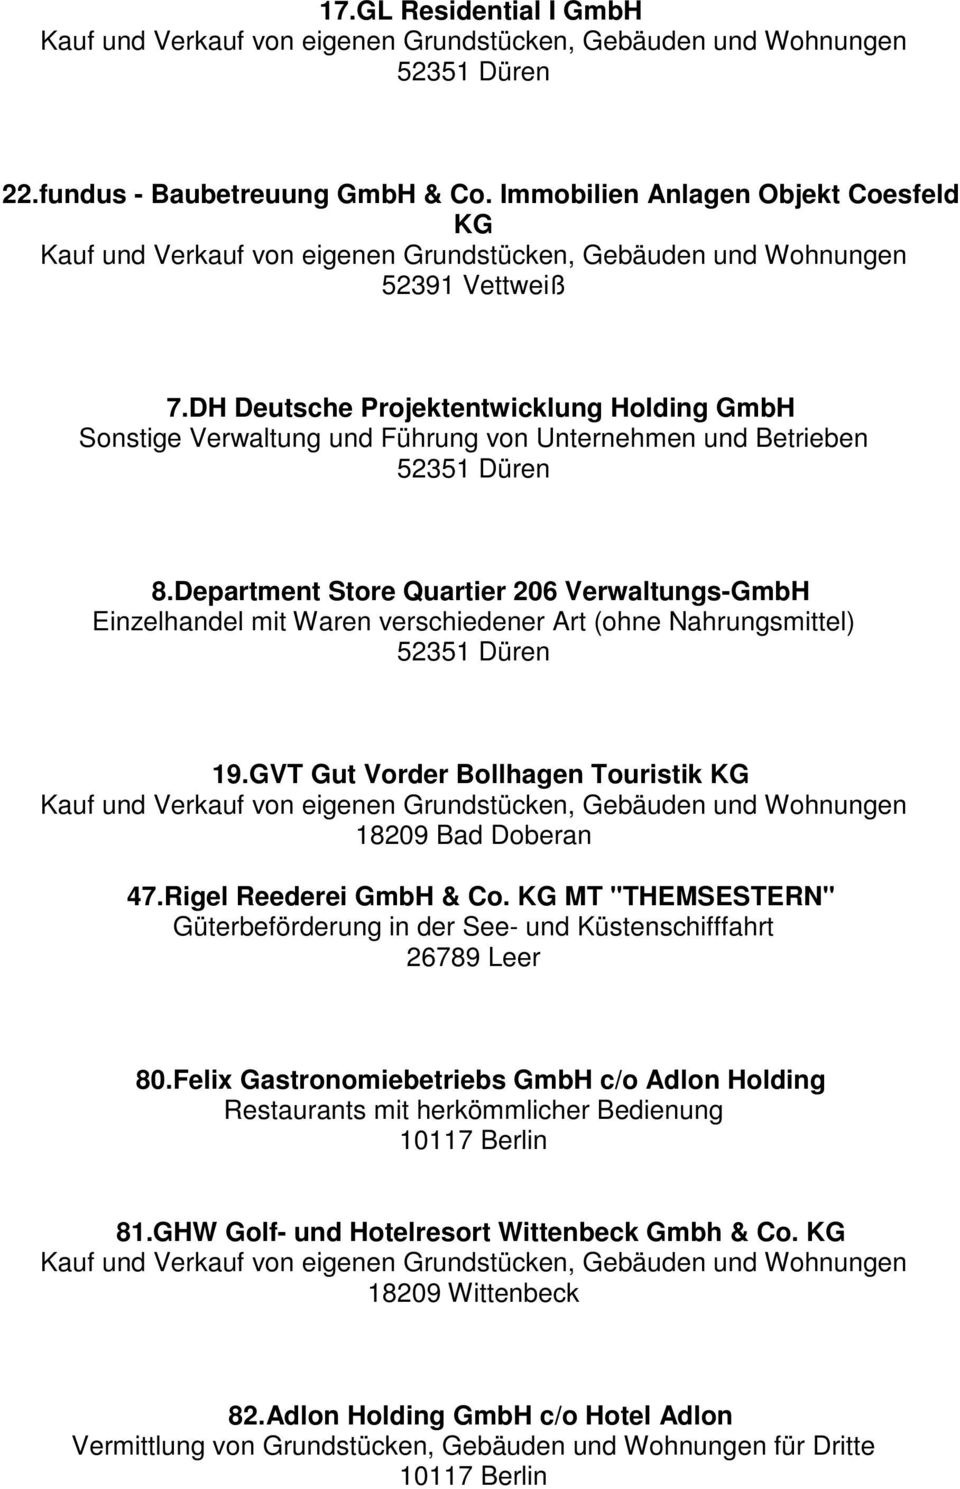 GVT Gut Vorder Bollhagen Touristik 47.Rigel Reederei GmbH & Co. MT "THEMSESTERN" Güterbeförderung in der See- und Küstenschifffahrt 26789 Leer 80.